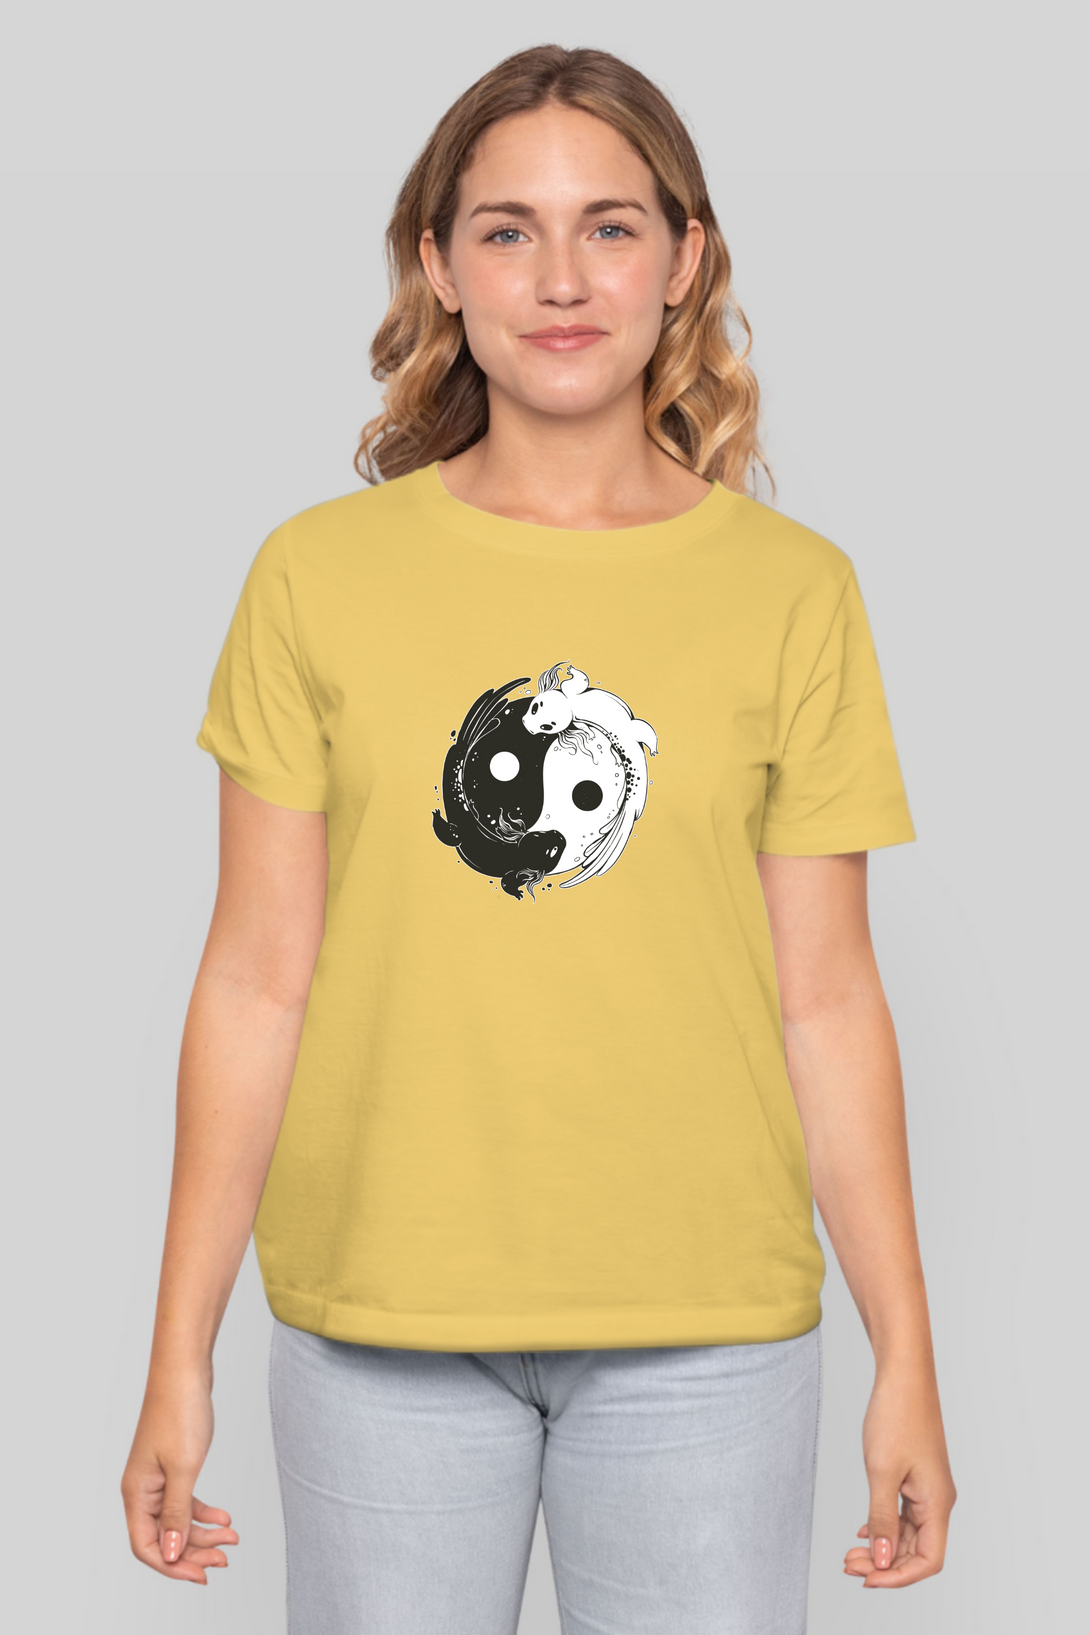 Yin Yang Axolotl Printed T-Shirt For Women - WowWaves - 8